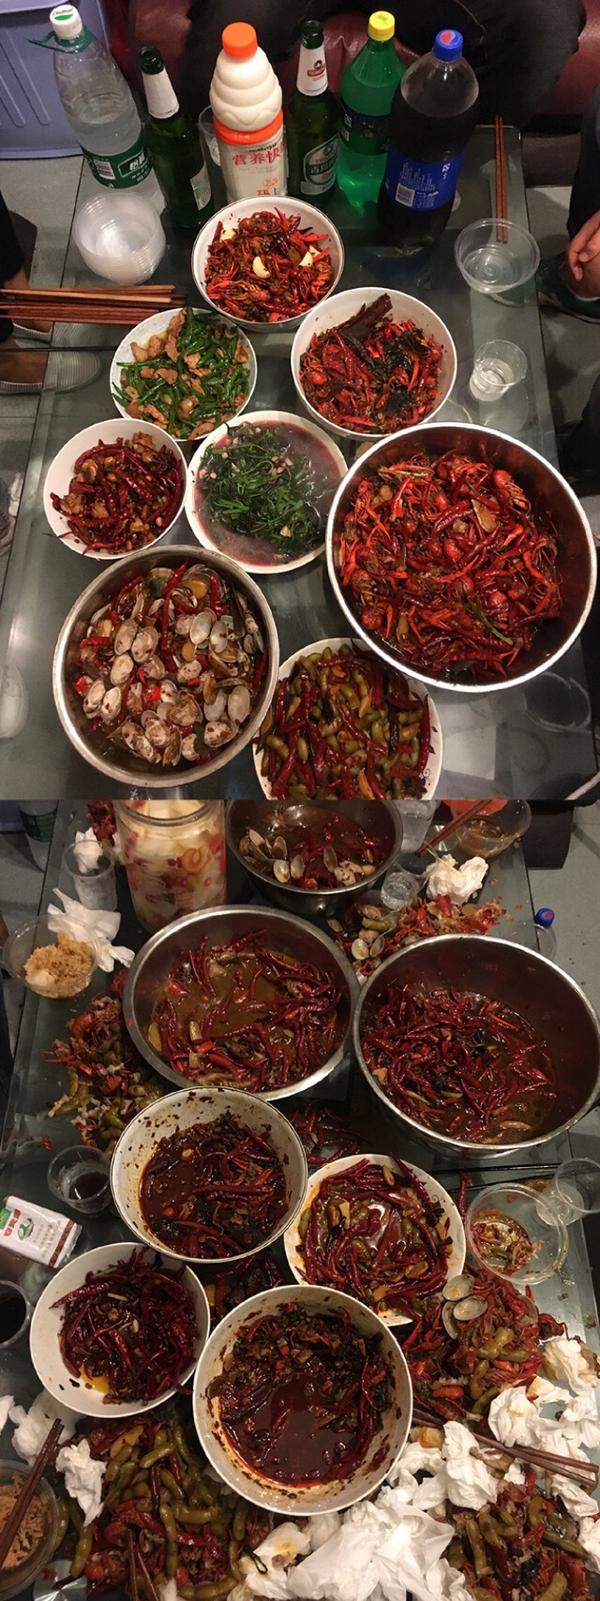 然后,湖南人吃辣的阈值也不同,那一桌有人辣的不要不要的,不过是少数